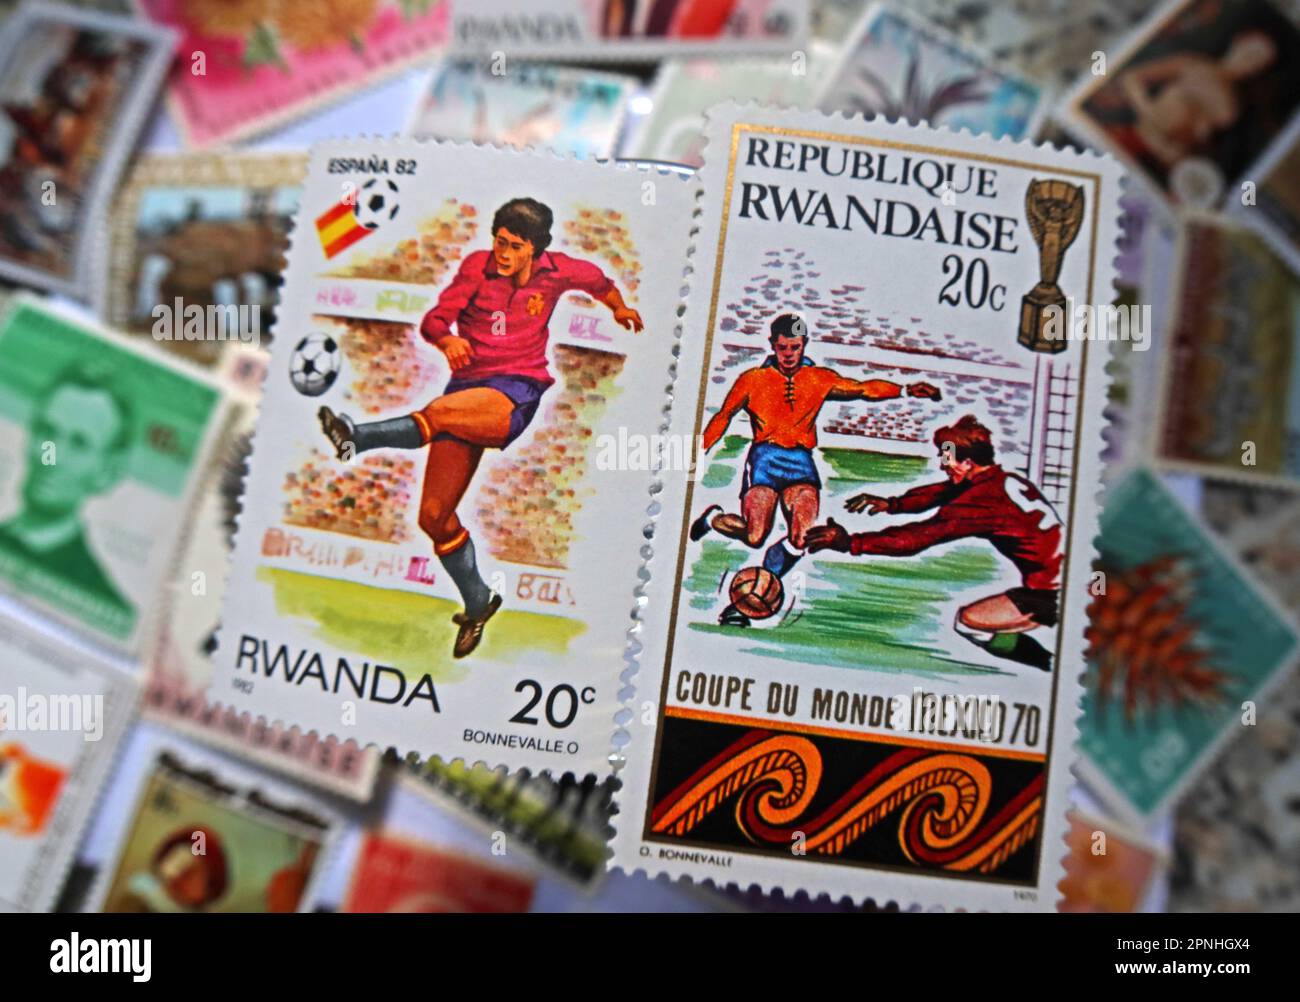 Francobollo del paese Ruanda, destinazione in Africa per le deportazioni di legge sulle migrazioni illegali, guidato dal ministro britannico Suella Braverman Foto Stock